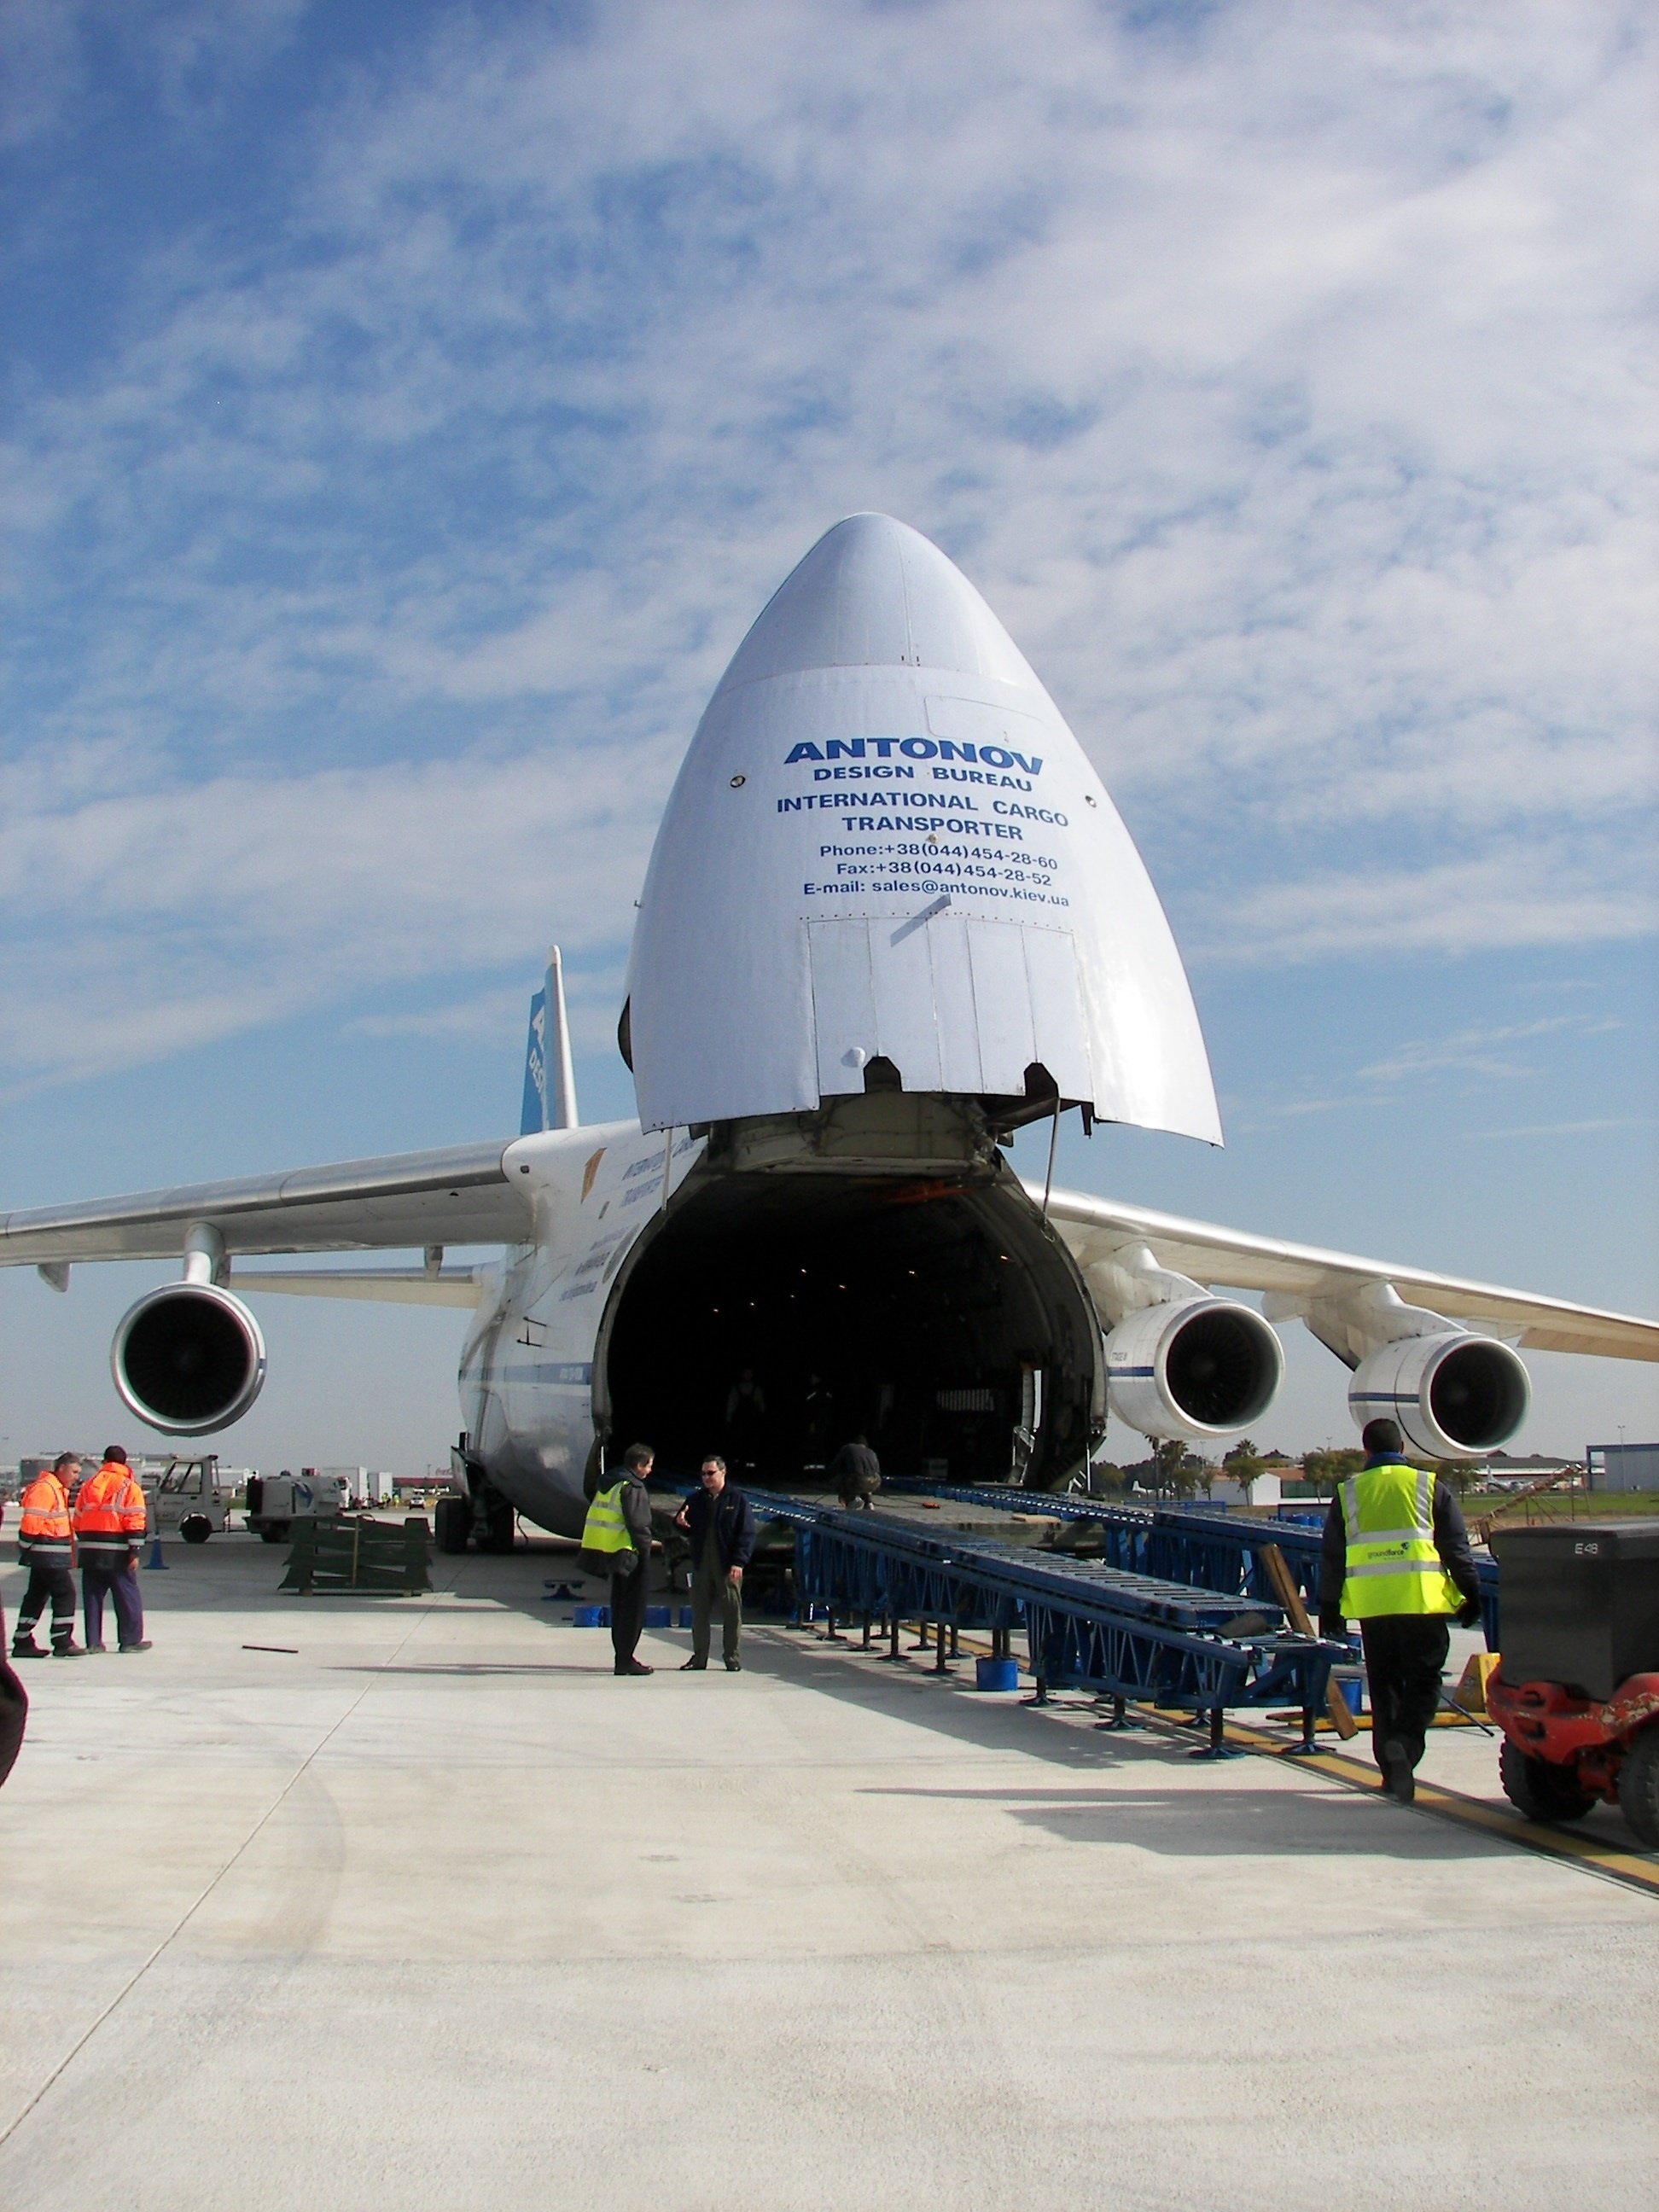 El Antonov 124, el segundo carguero más grande del mundo, visita el aeropuerto de San Pablo